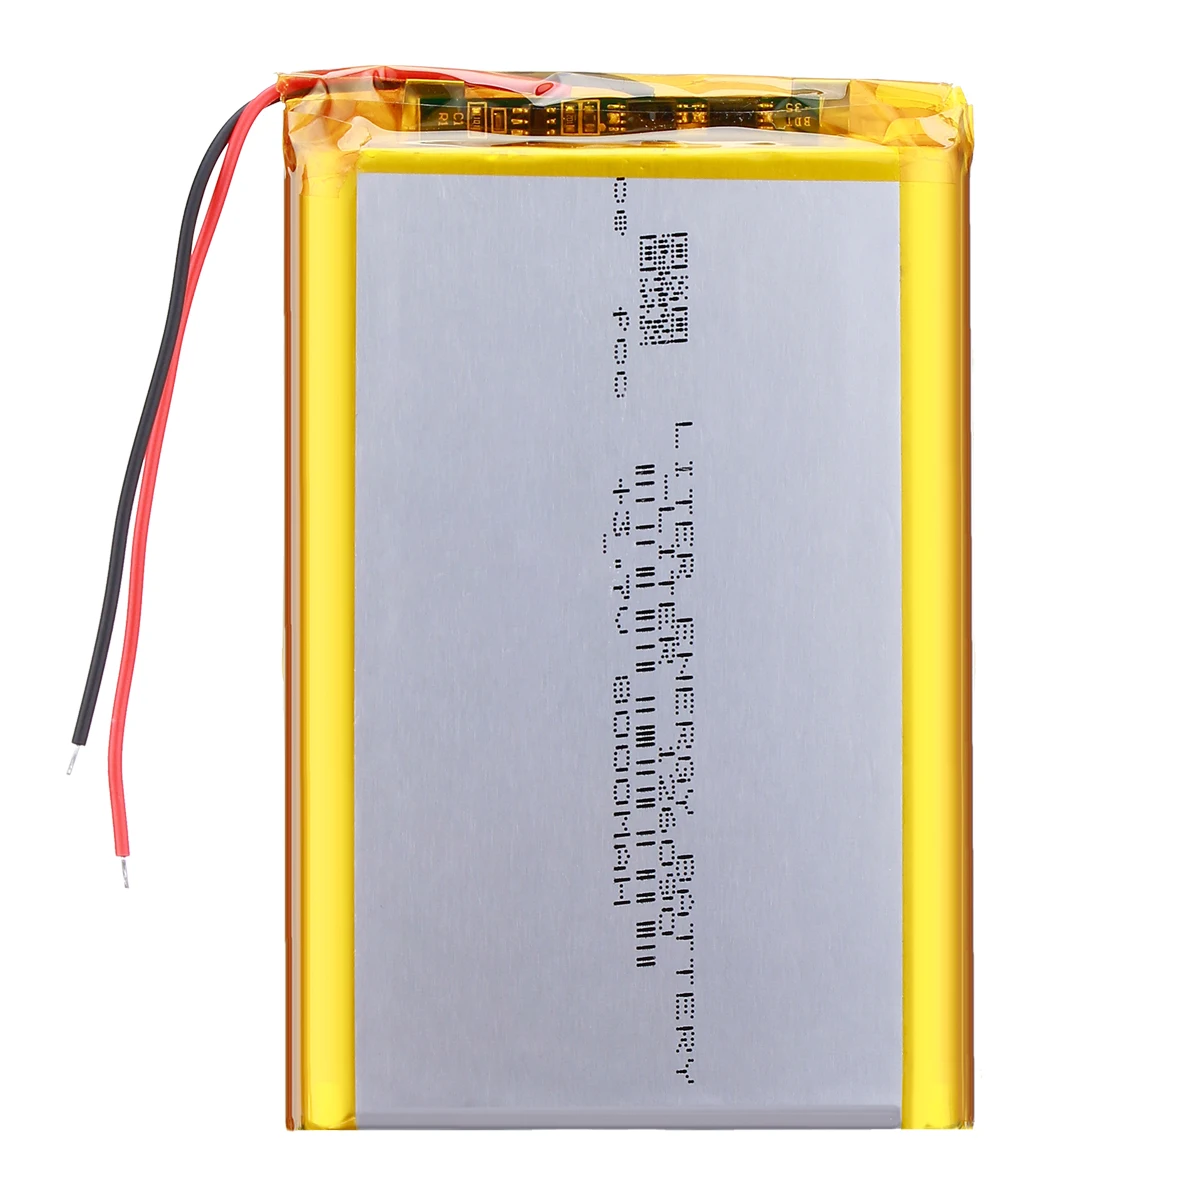 Bateria 3.7v 2ah P/Luz Emergencia Leds - Mastrangelo - Productos eléctricos